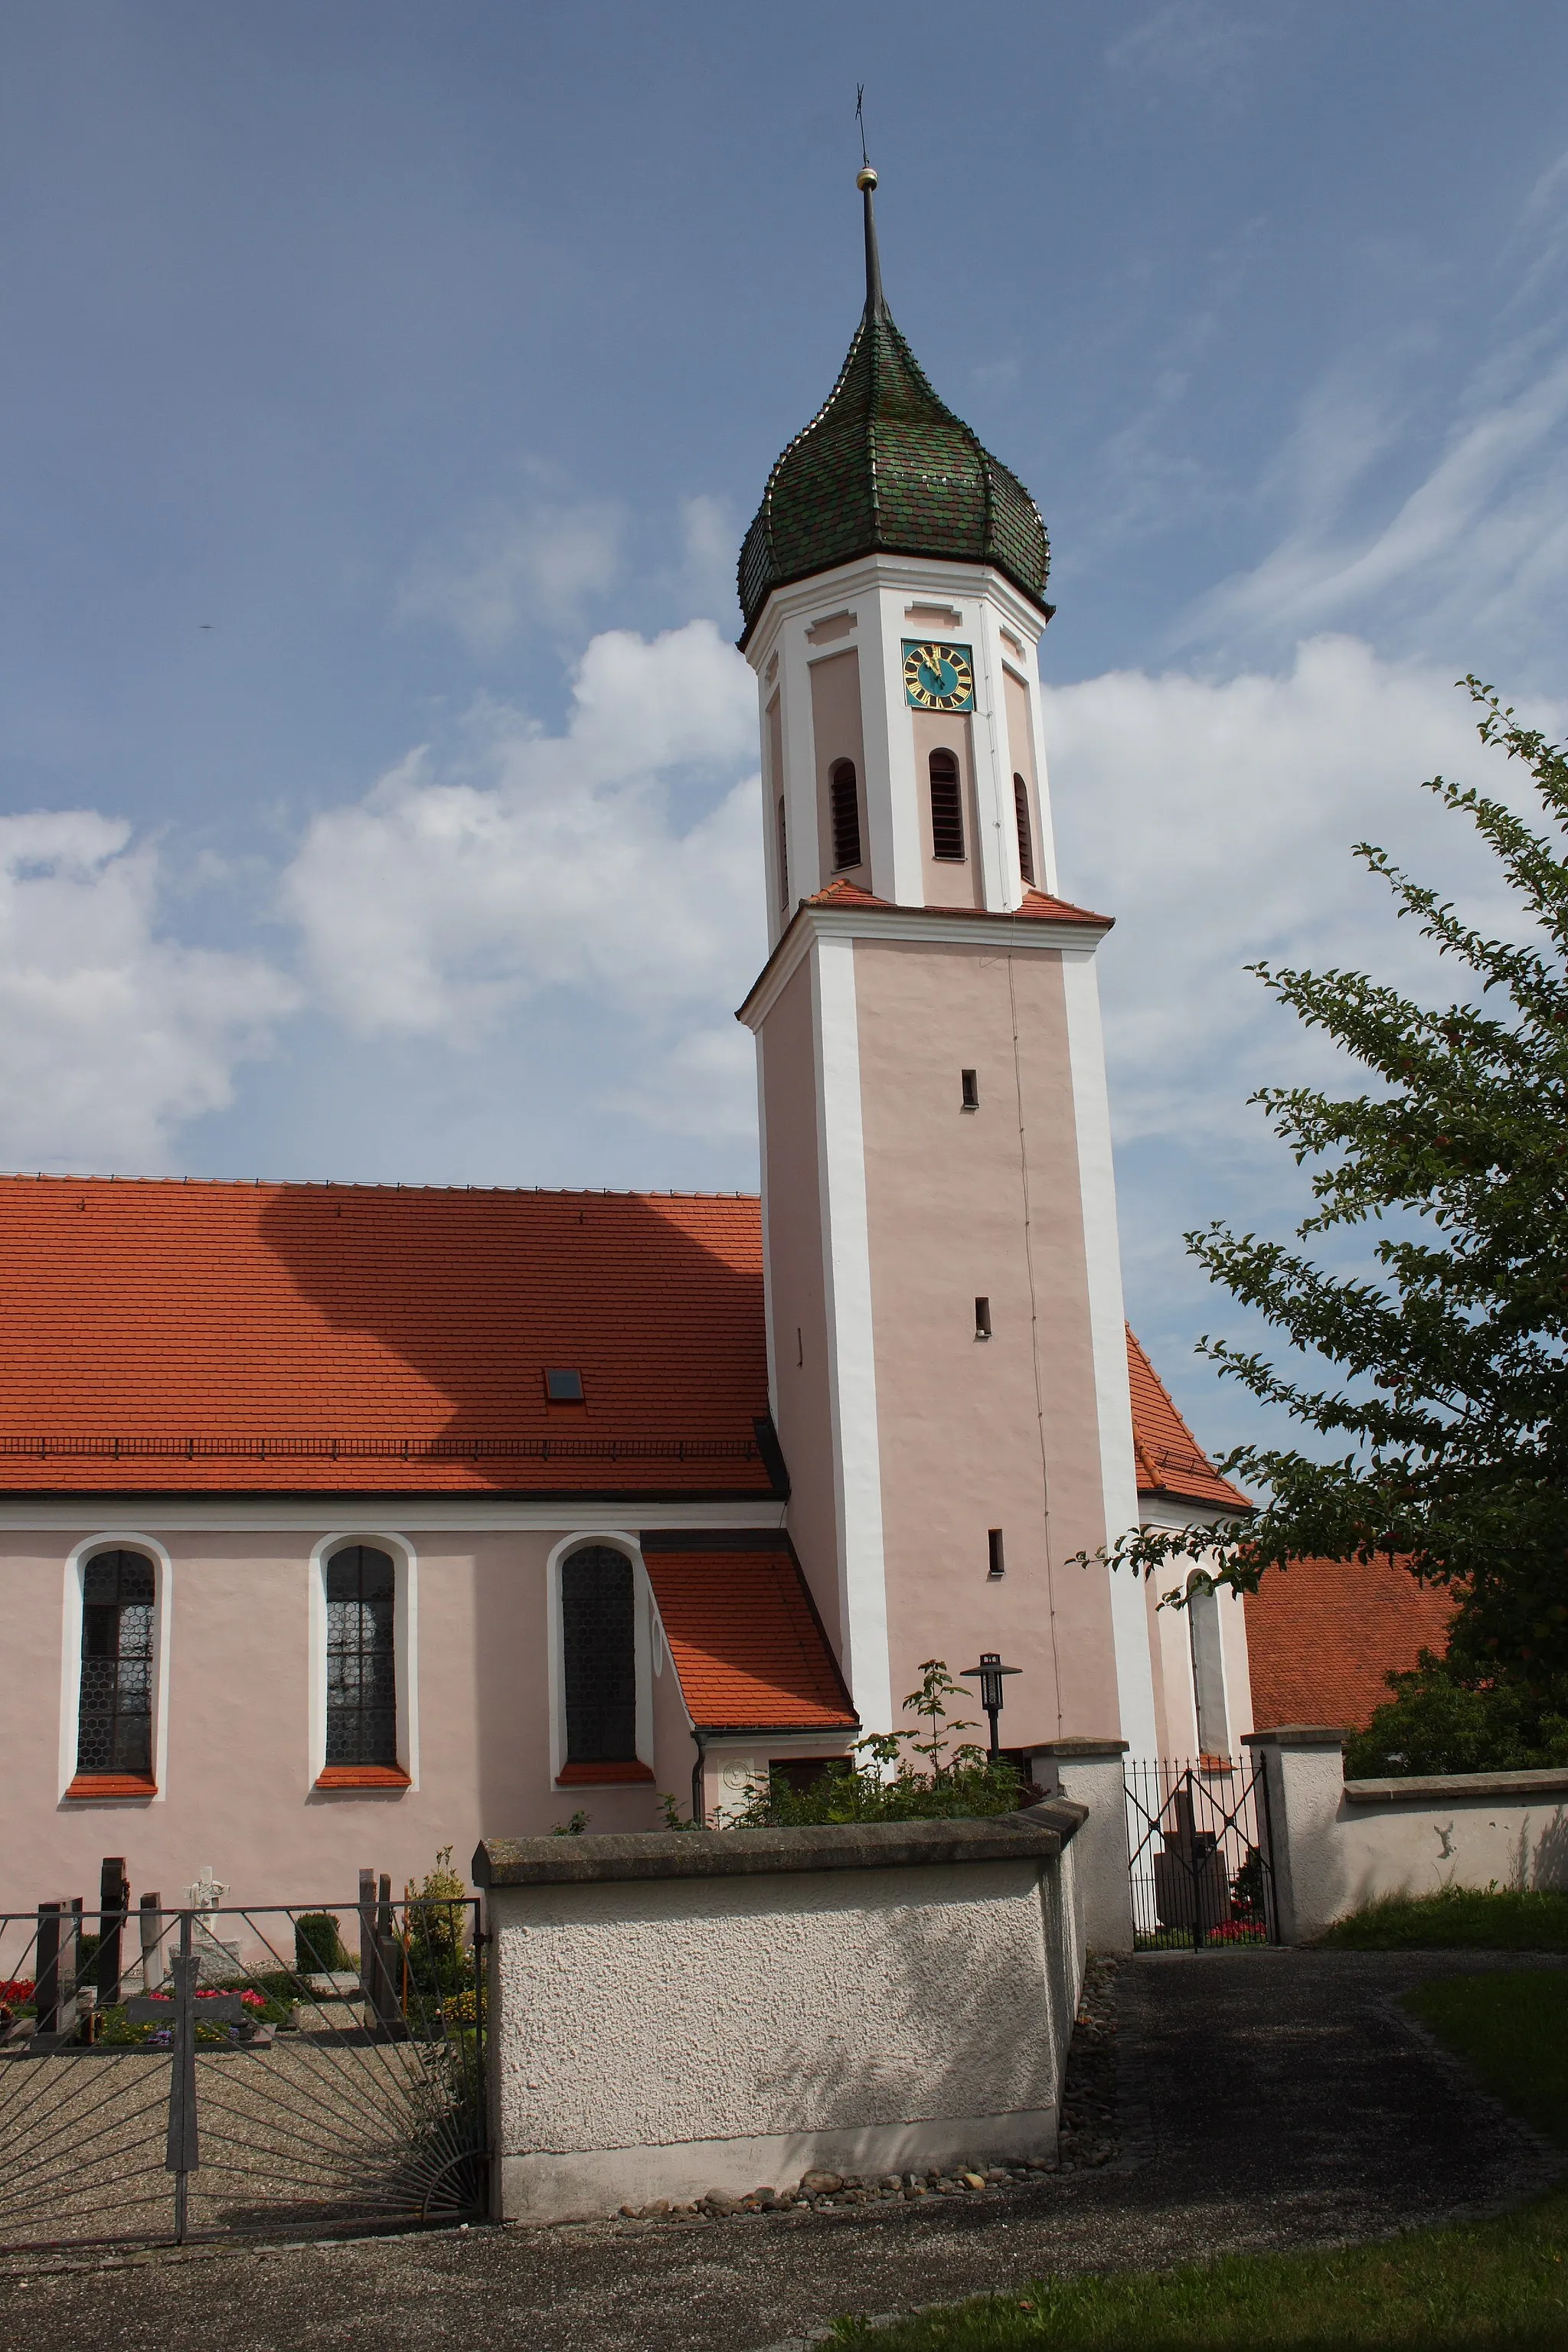 Photo showing: Katholische Pfarrkirche St. Nikolaus in Rechbergreuthen, einem Ortsteil von Winterbach im Landkreis Günzburg (Bayern), Saalbau von 1681/82, Turm mit Zwiebelhaube